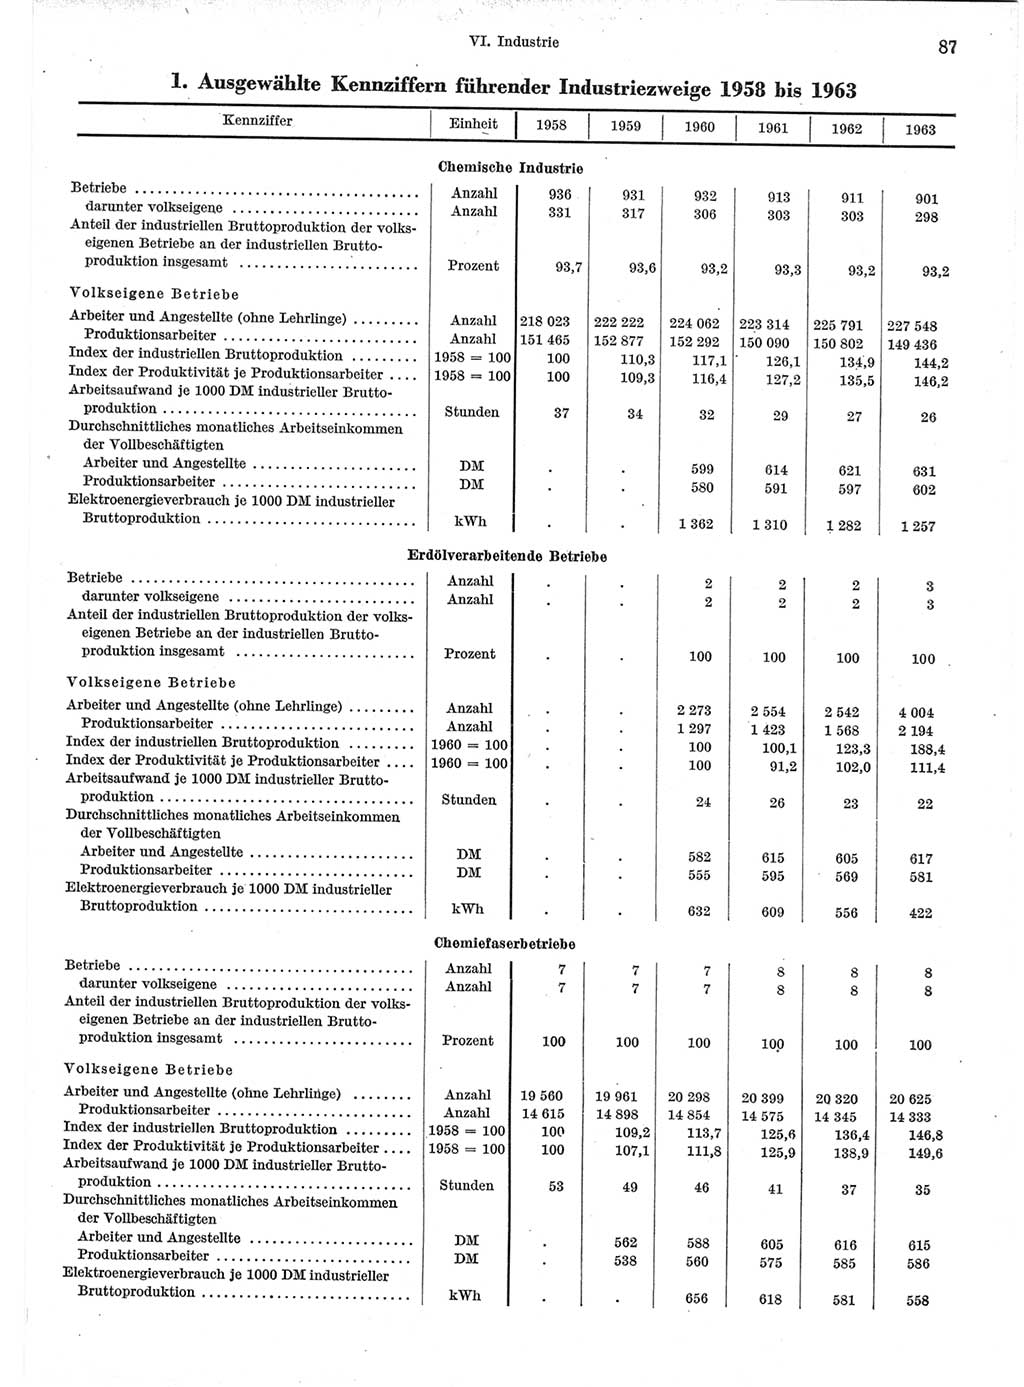 Statistisches Jahrbuch der Deutschen Demokratischen Republik (DDR) 1964, Seite 87 (Stat. Jb. DDR 1964, S. 87)